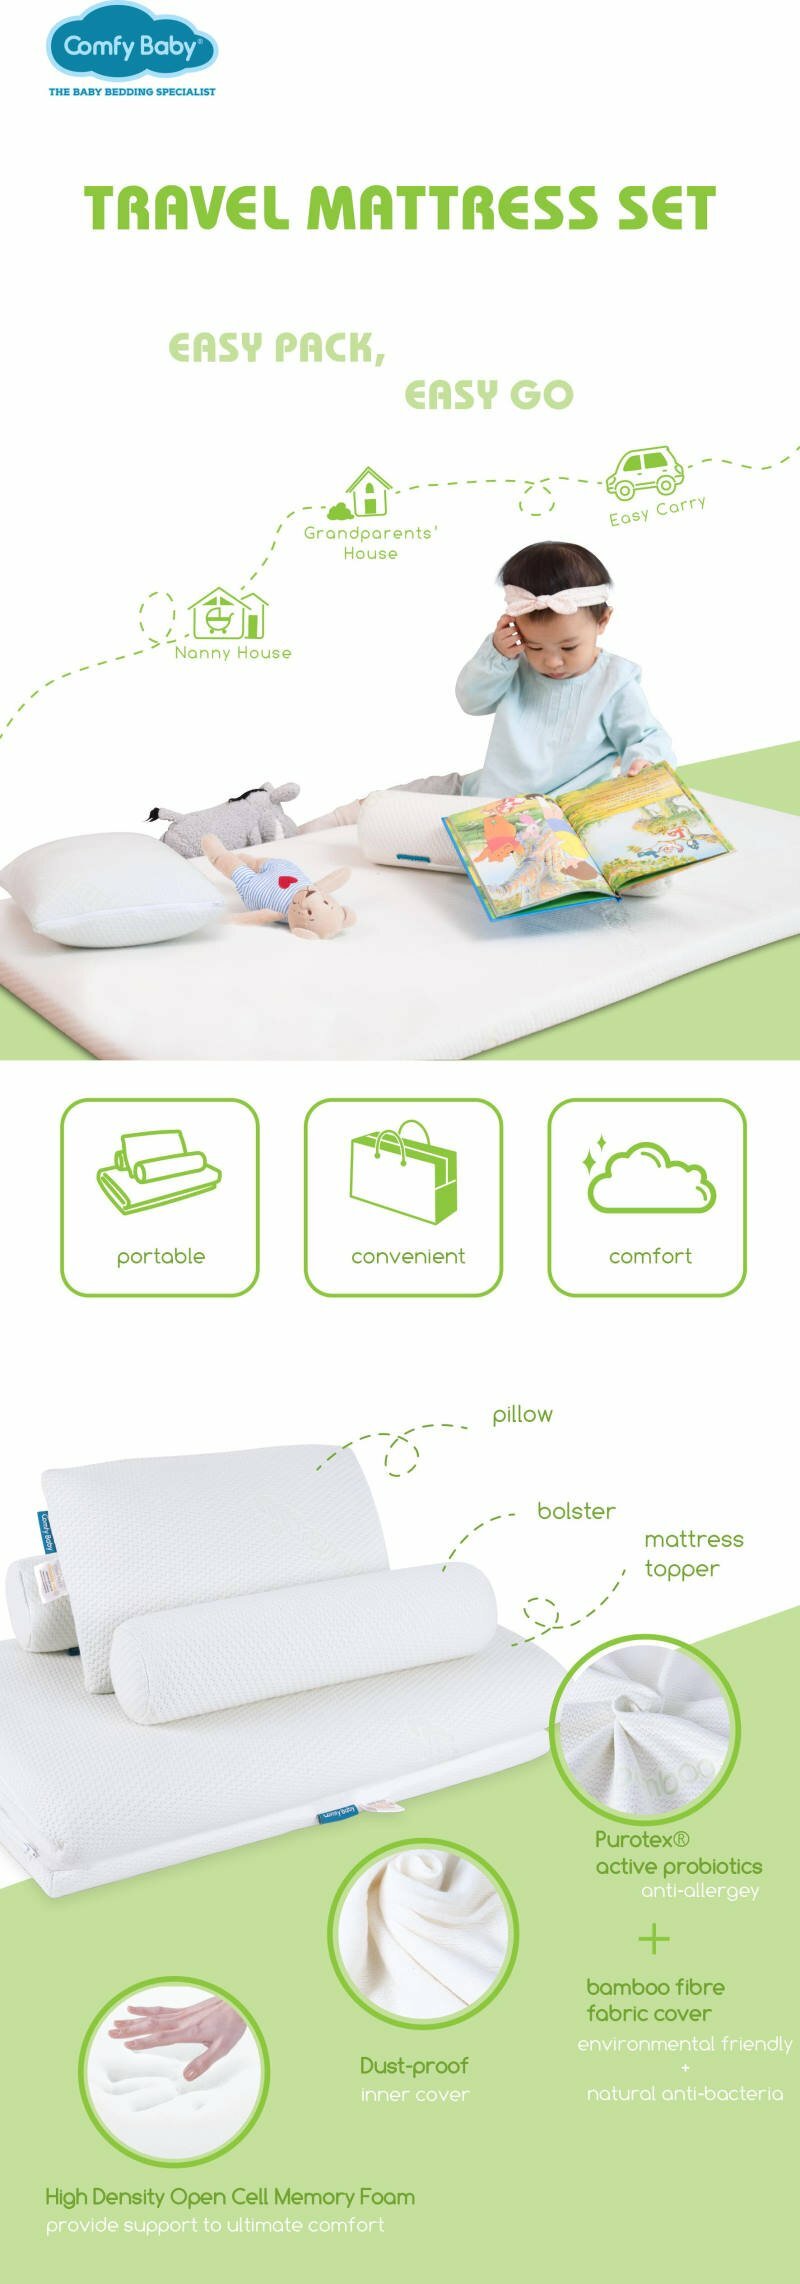 Comfy Baby Travel Mattress Set Product Descriptions